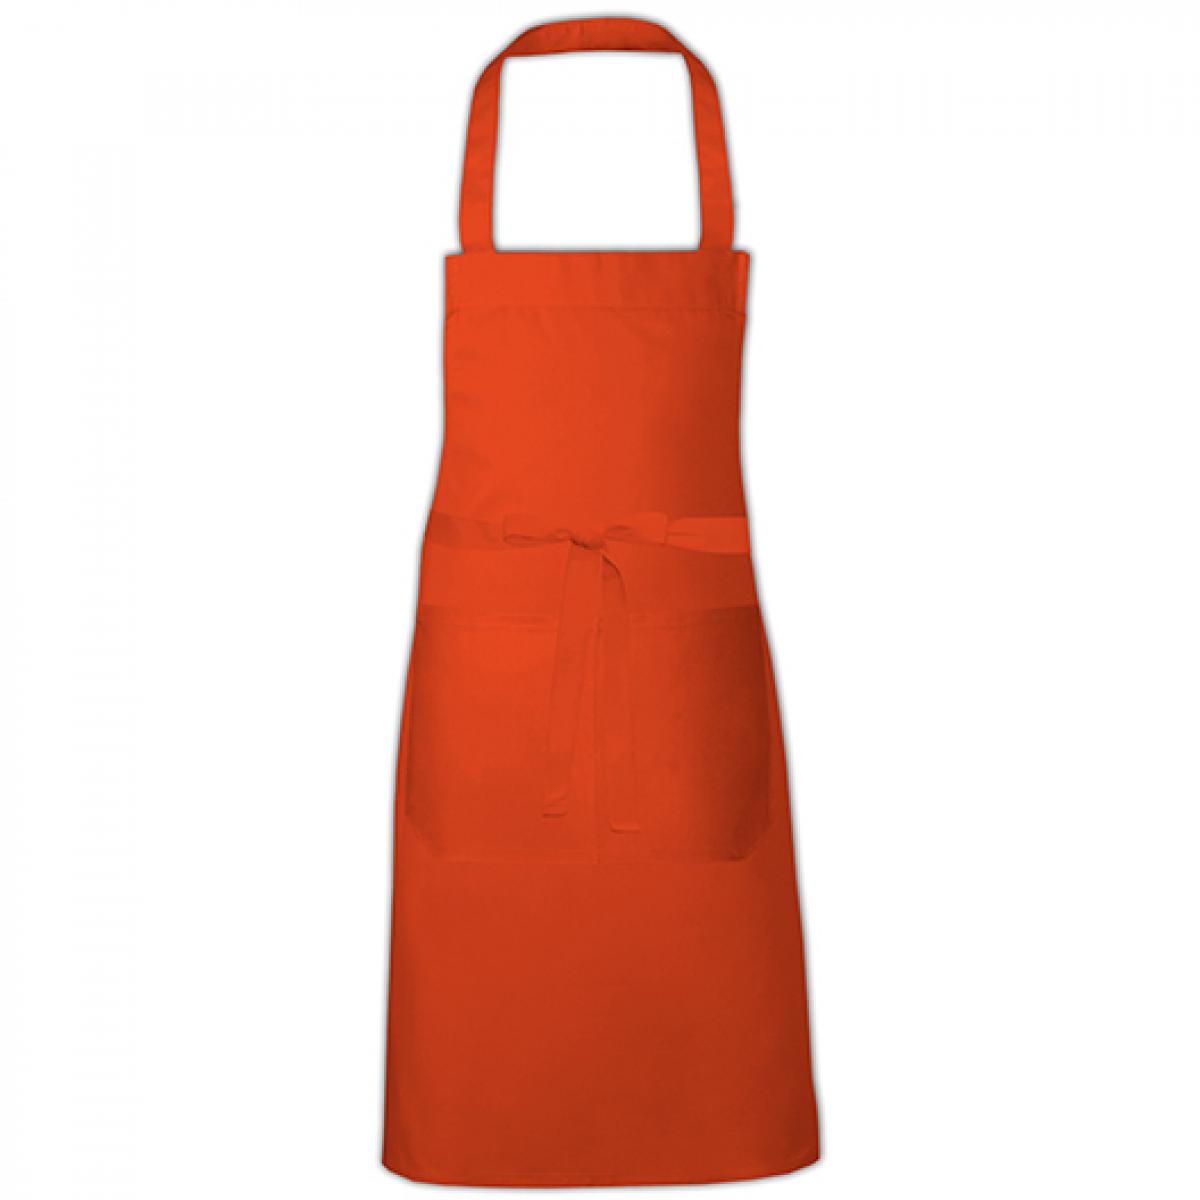 Hersteller: Link Kitchen Wear Herstellernummer: HS8073EU Artikelbezeichnung: Hobby Apron - EU Production - Kochschürze - Waschbar bis 60C Farbe: Orange (ca. Pantone 1655)